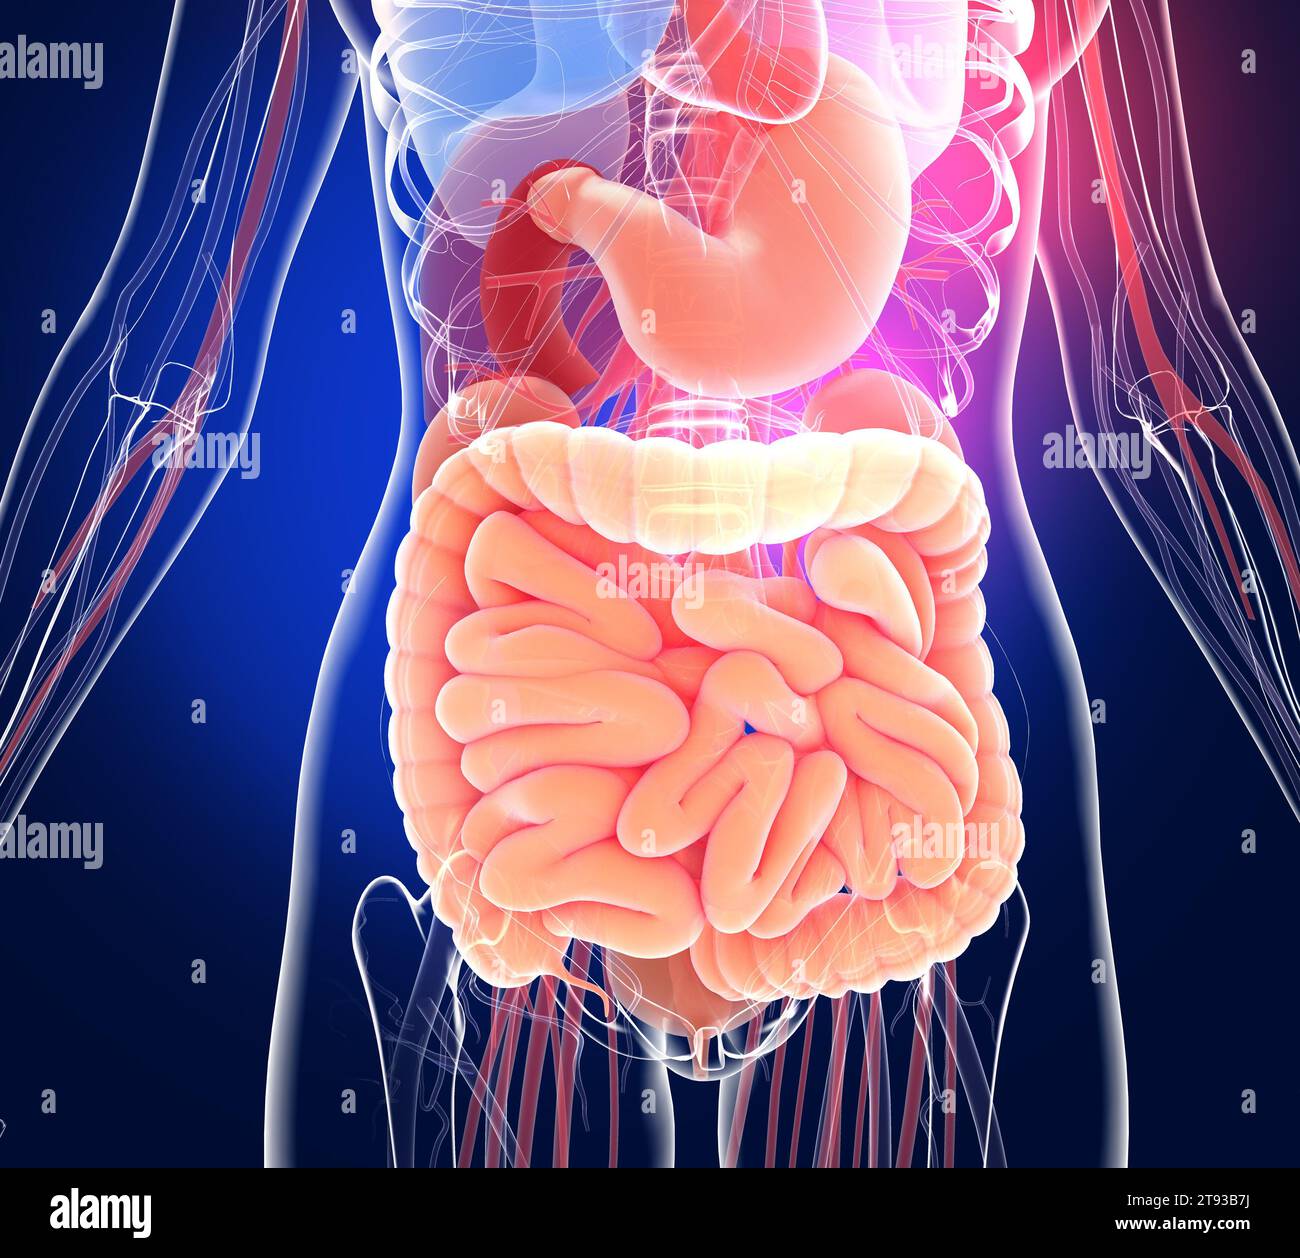 Illustrazione 3D trasparente del sistema digestivo espanso. Anatomia dell'intestino crasso e tenue, dello stomaco e di altri organi interni. Foto Stock